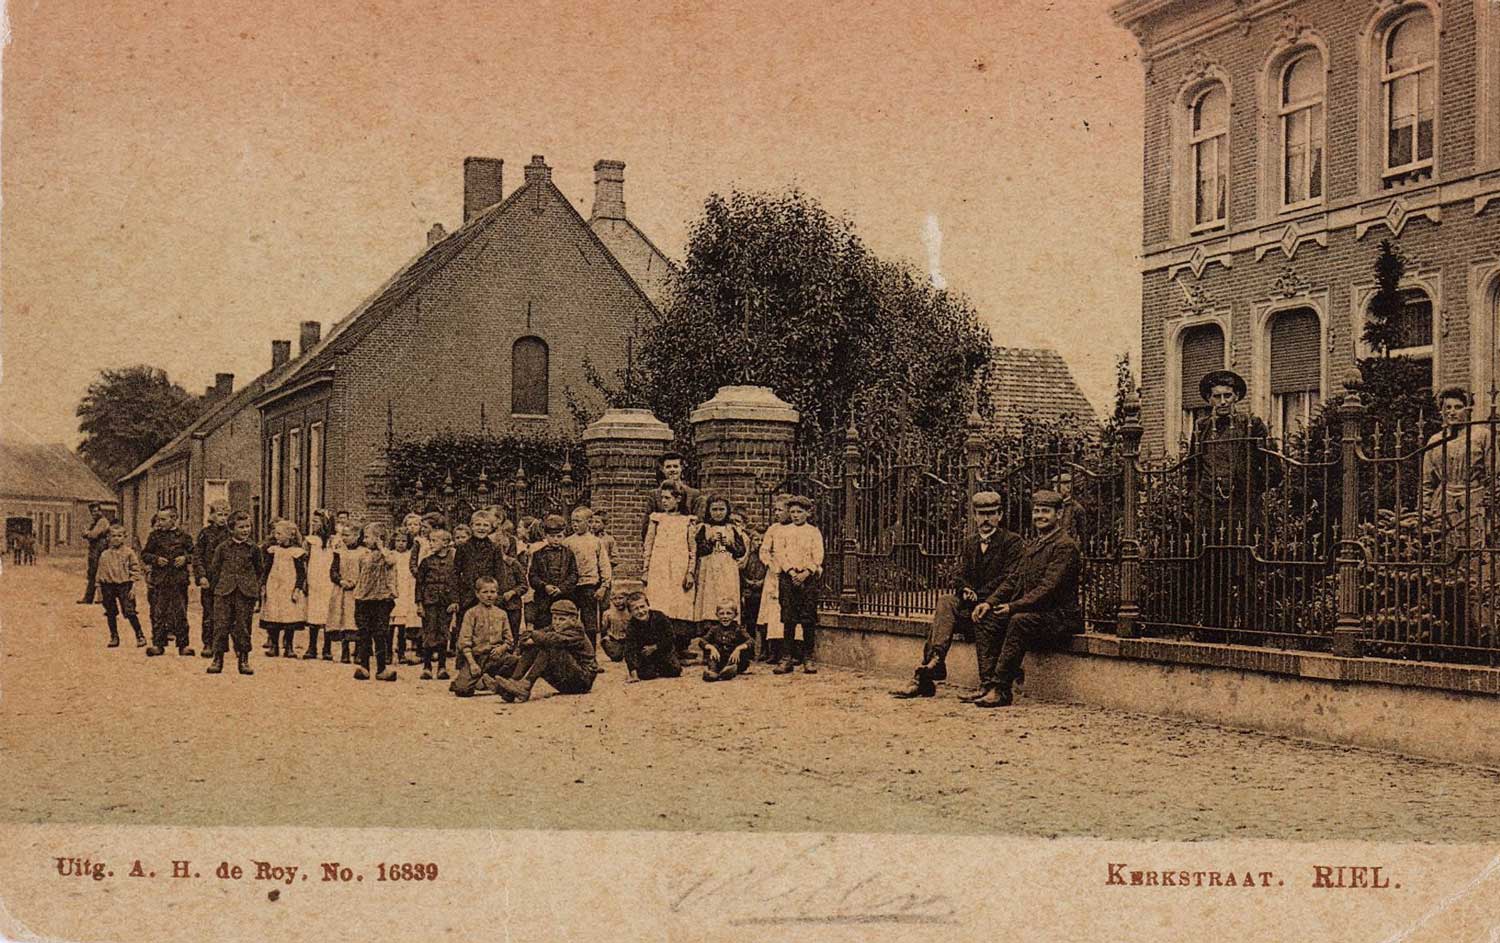 Kerkstraat Riel, 1886